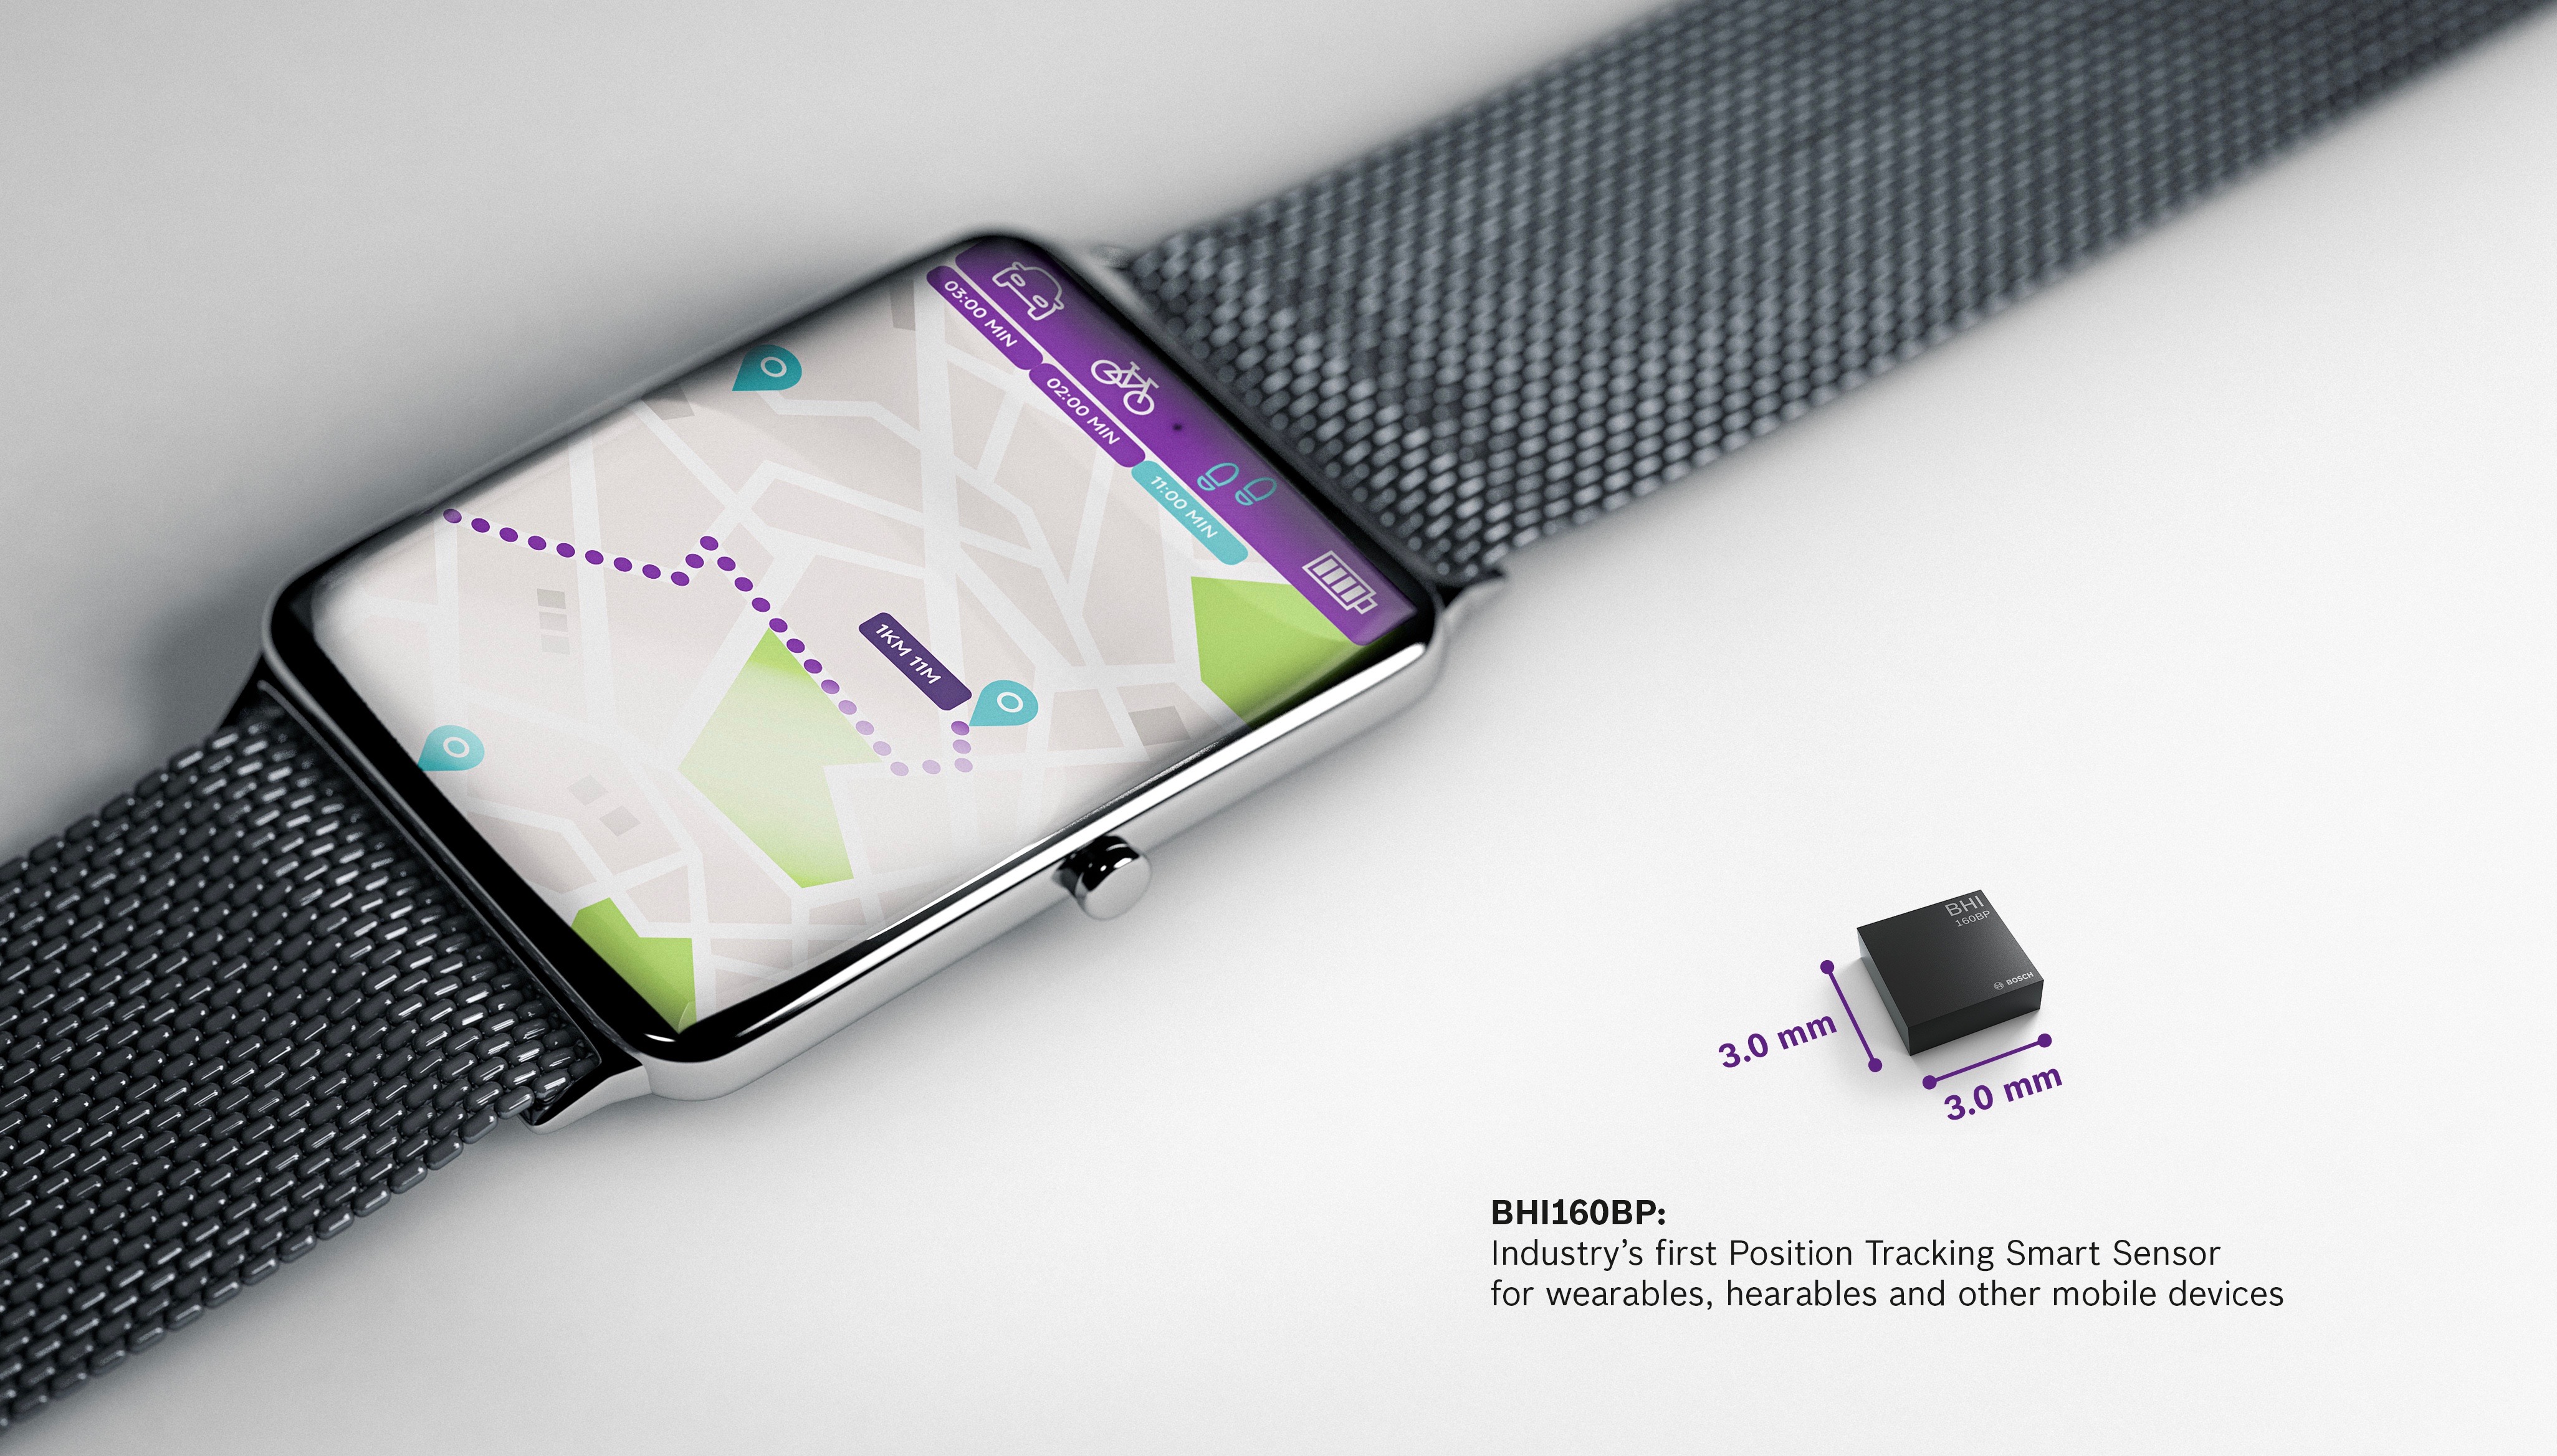 Bosch annuncia BHI160BP, il primo sensore smart di posizionamento per wearable